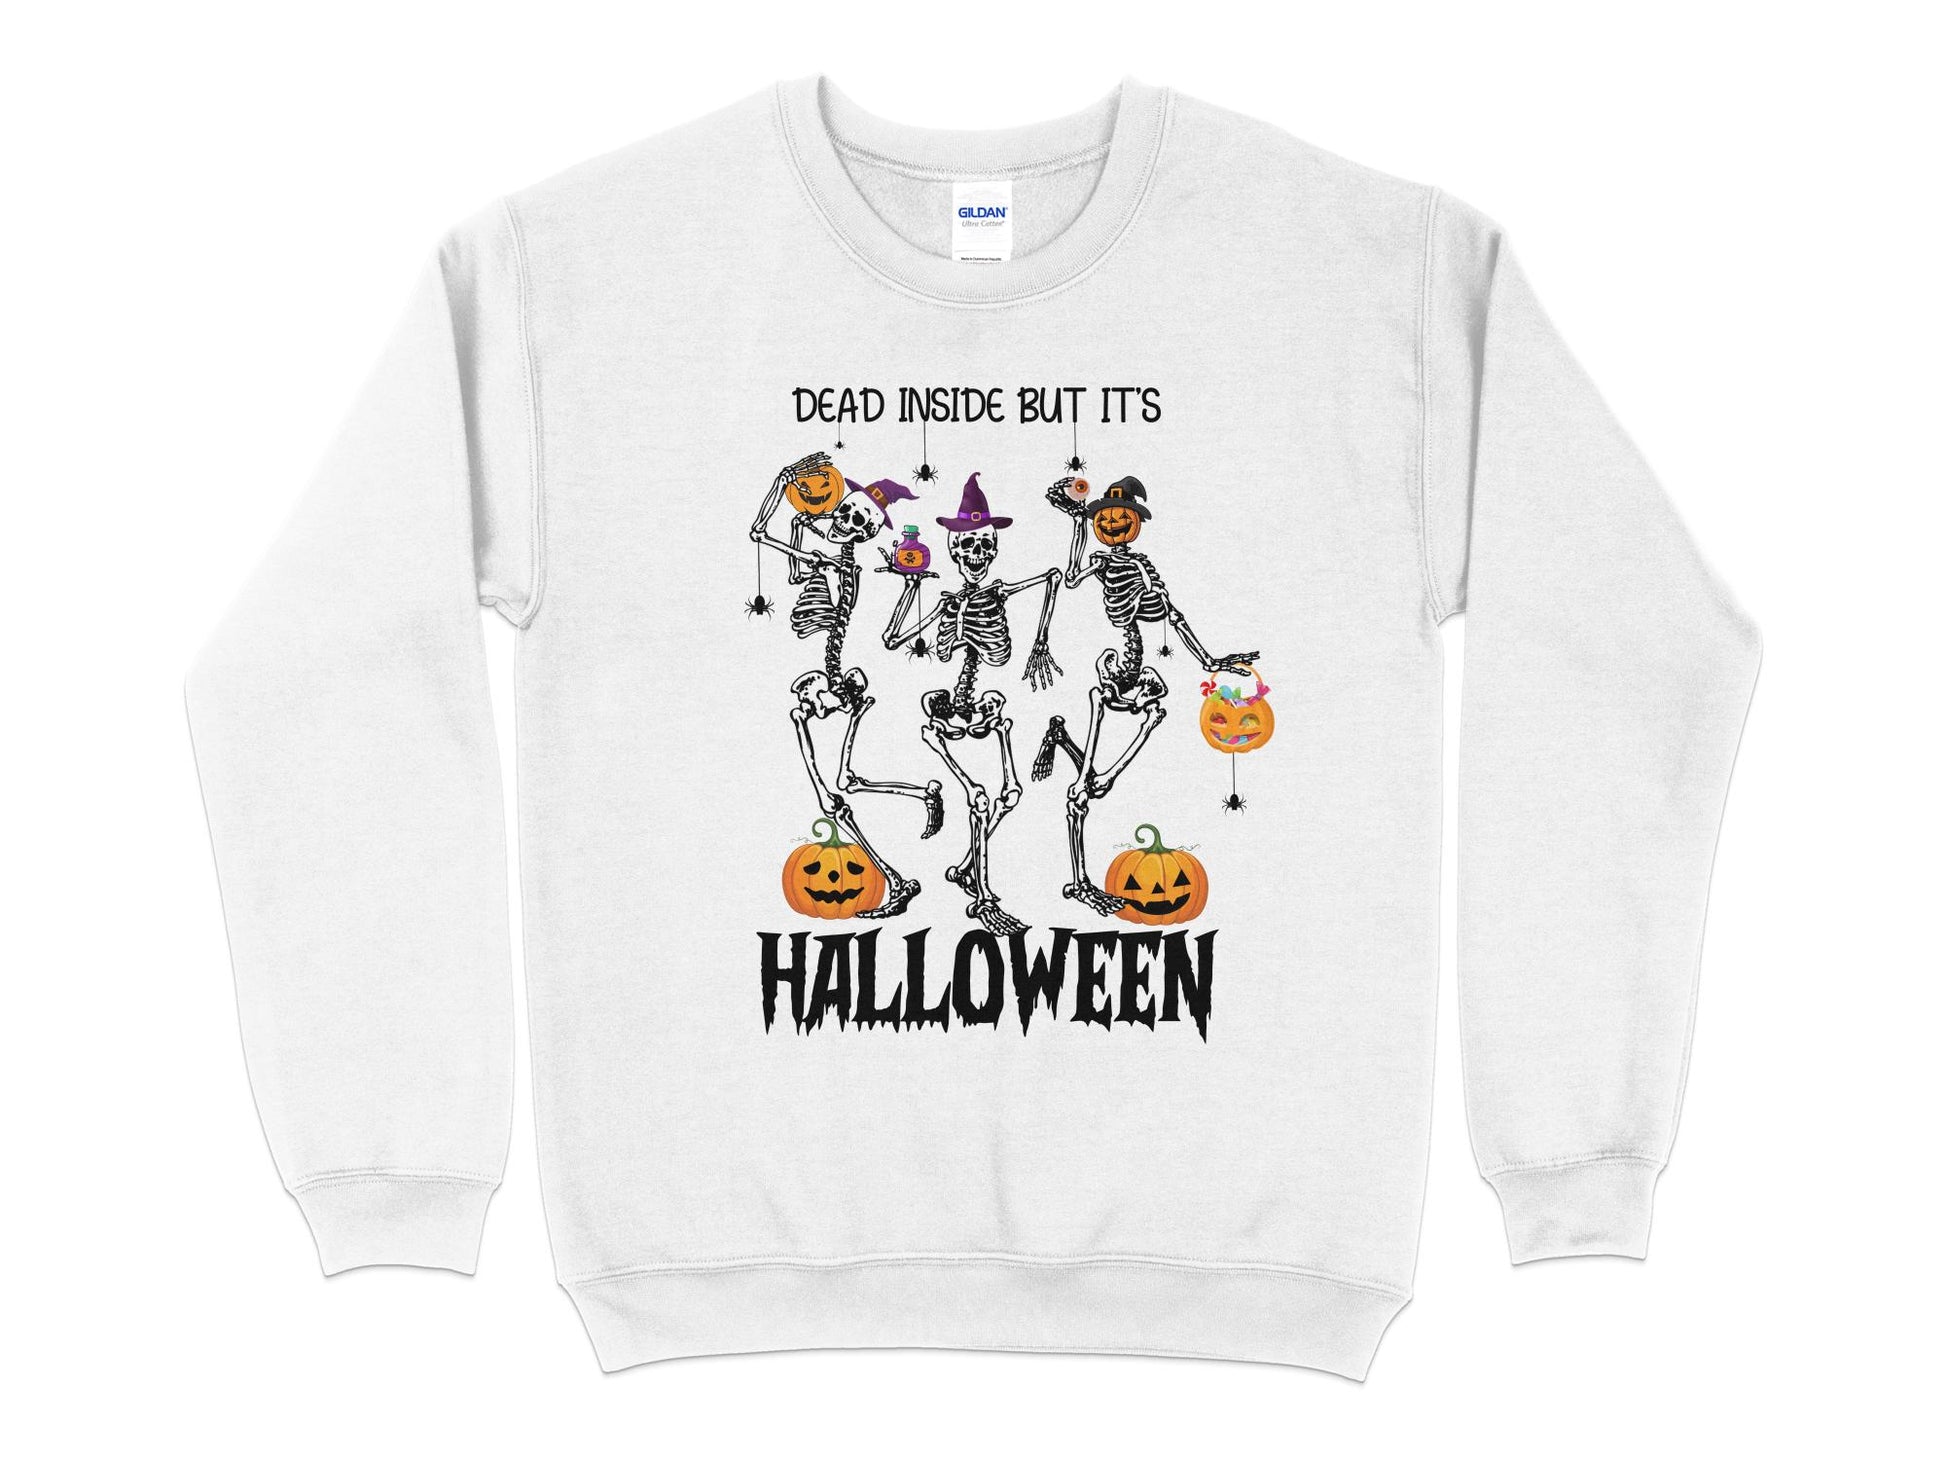 Halloween Sweatshirt, Dead Inside But It's Halloween, Halloween Crew Neck - Mardonyx Sweatshirt S / White